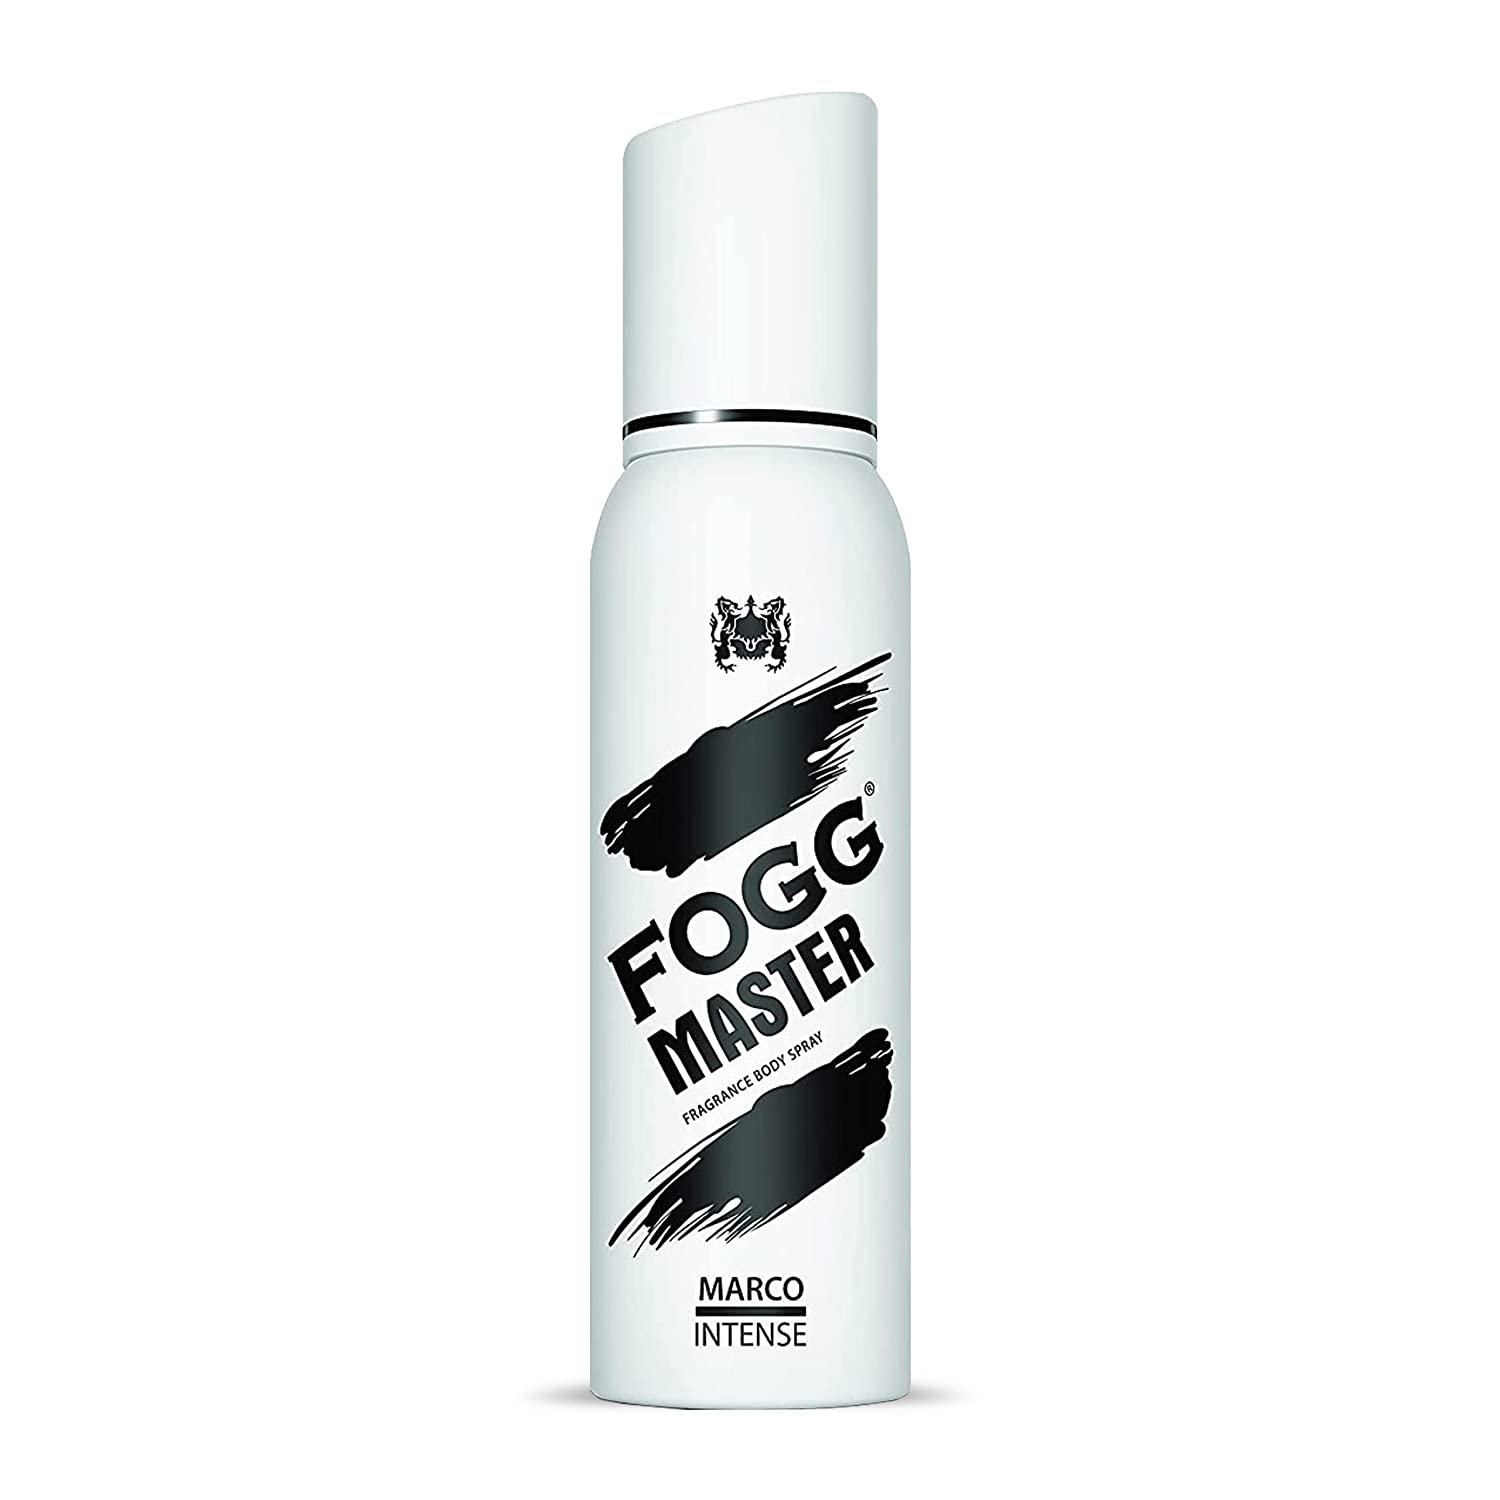 Fogg Master - Marco Fragrance - Body Spray For Men, (120 ml) Long Lasting Fragrance